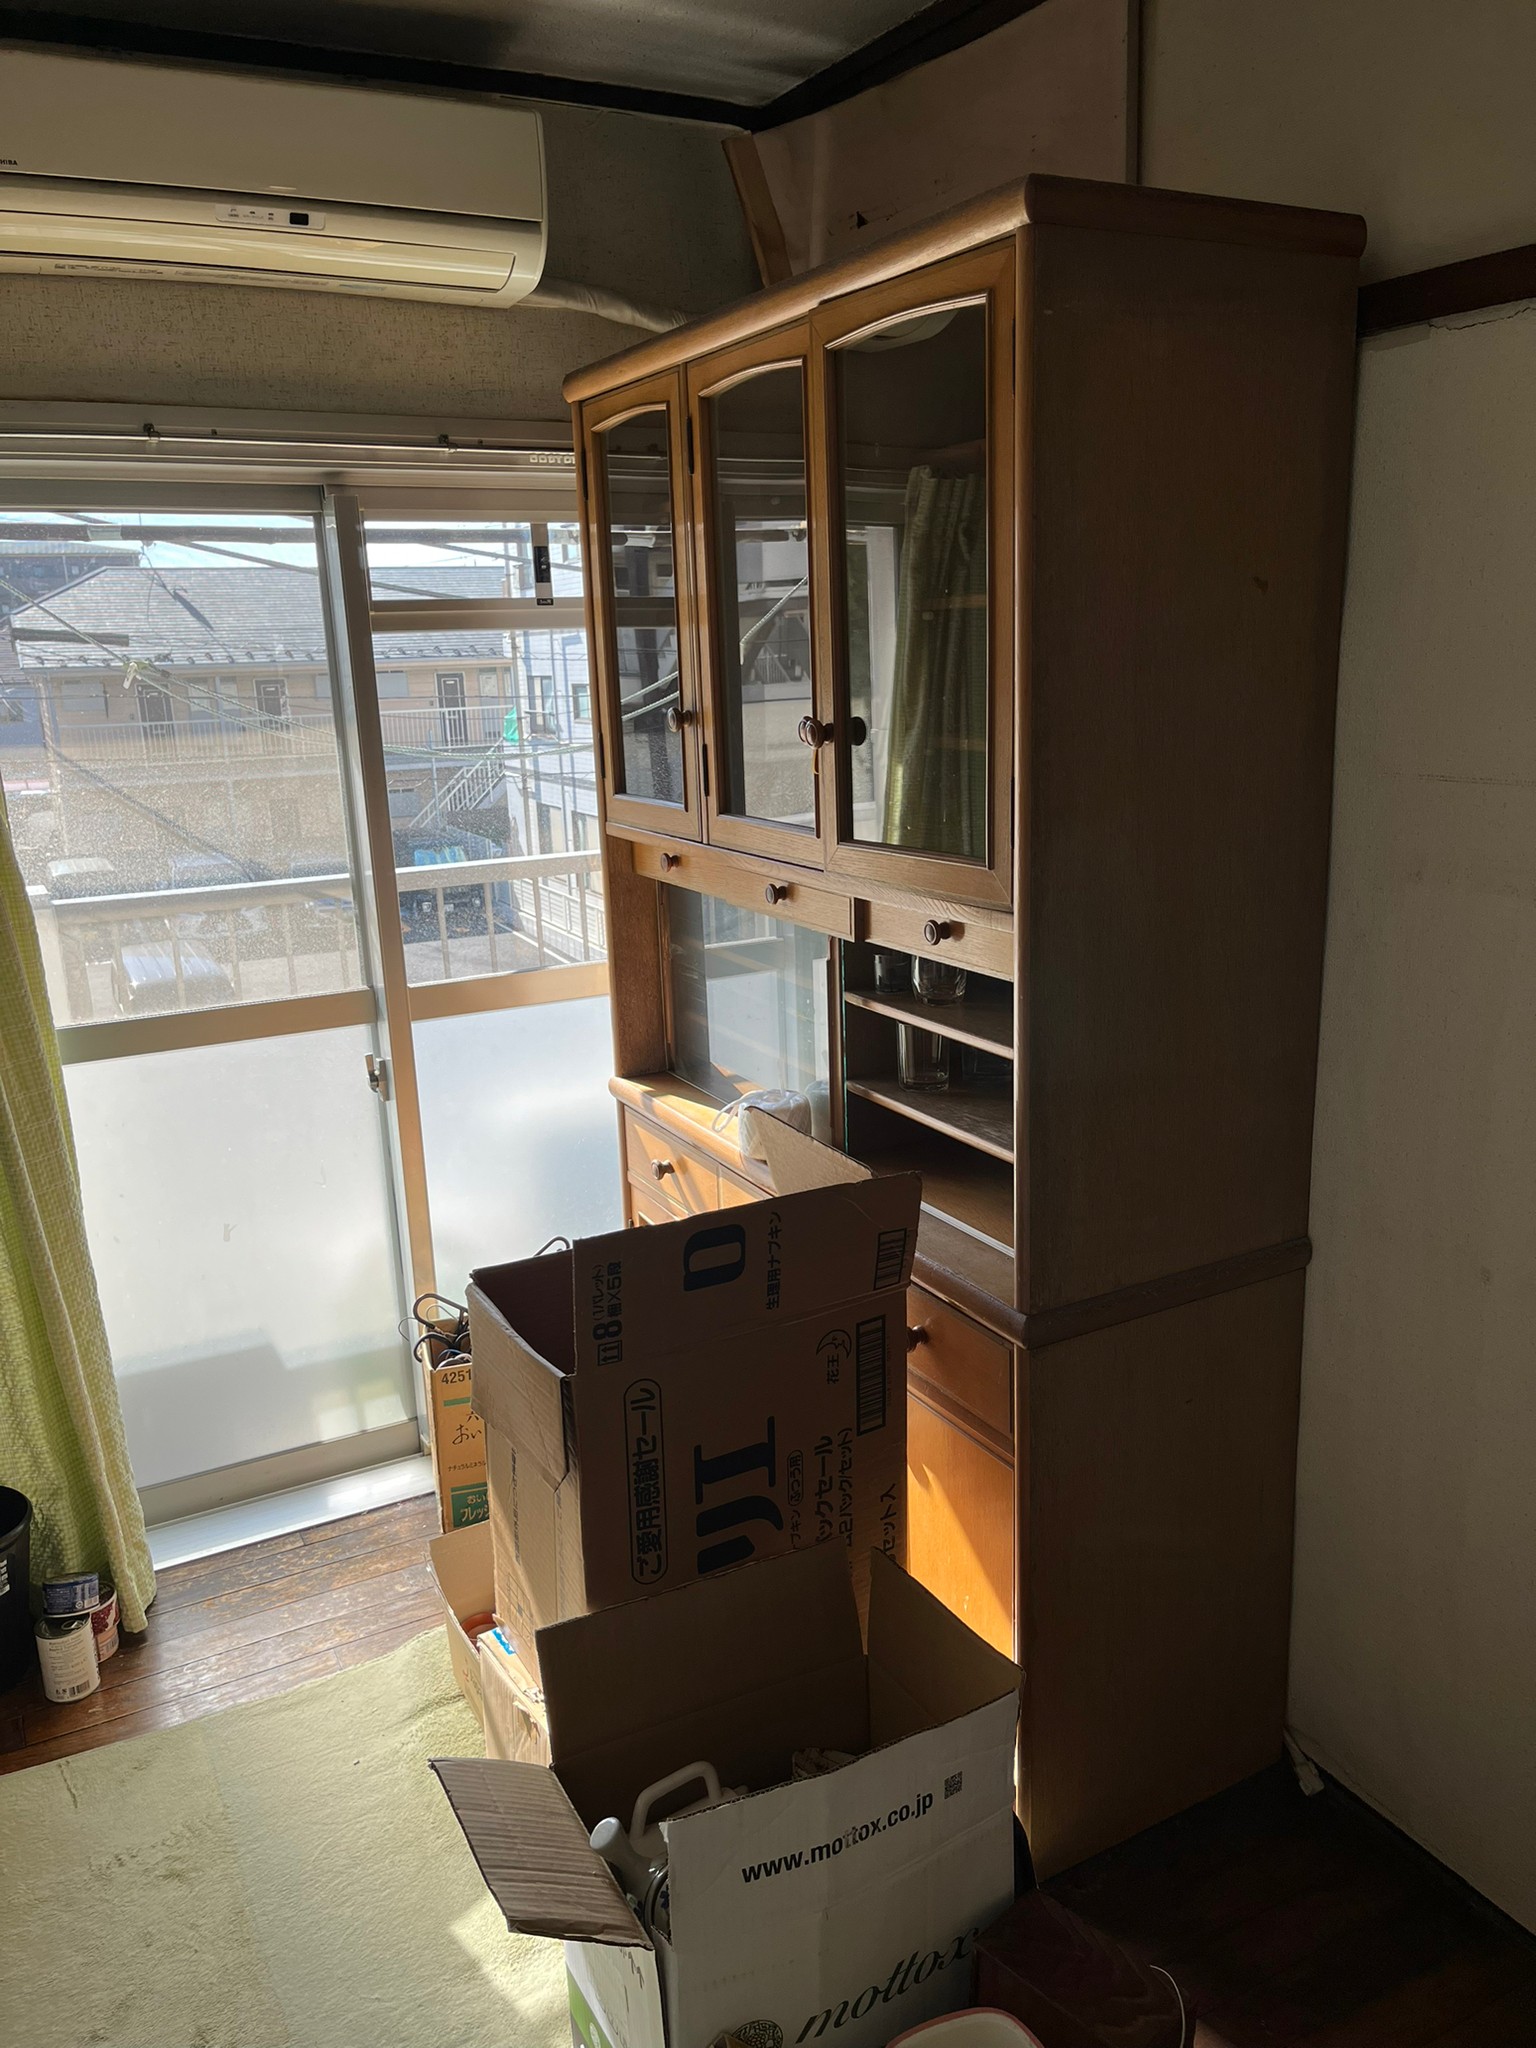 食器棚、キッチン用品、エアコン、エアコン室外機の回収前の状態